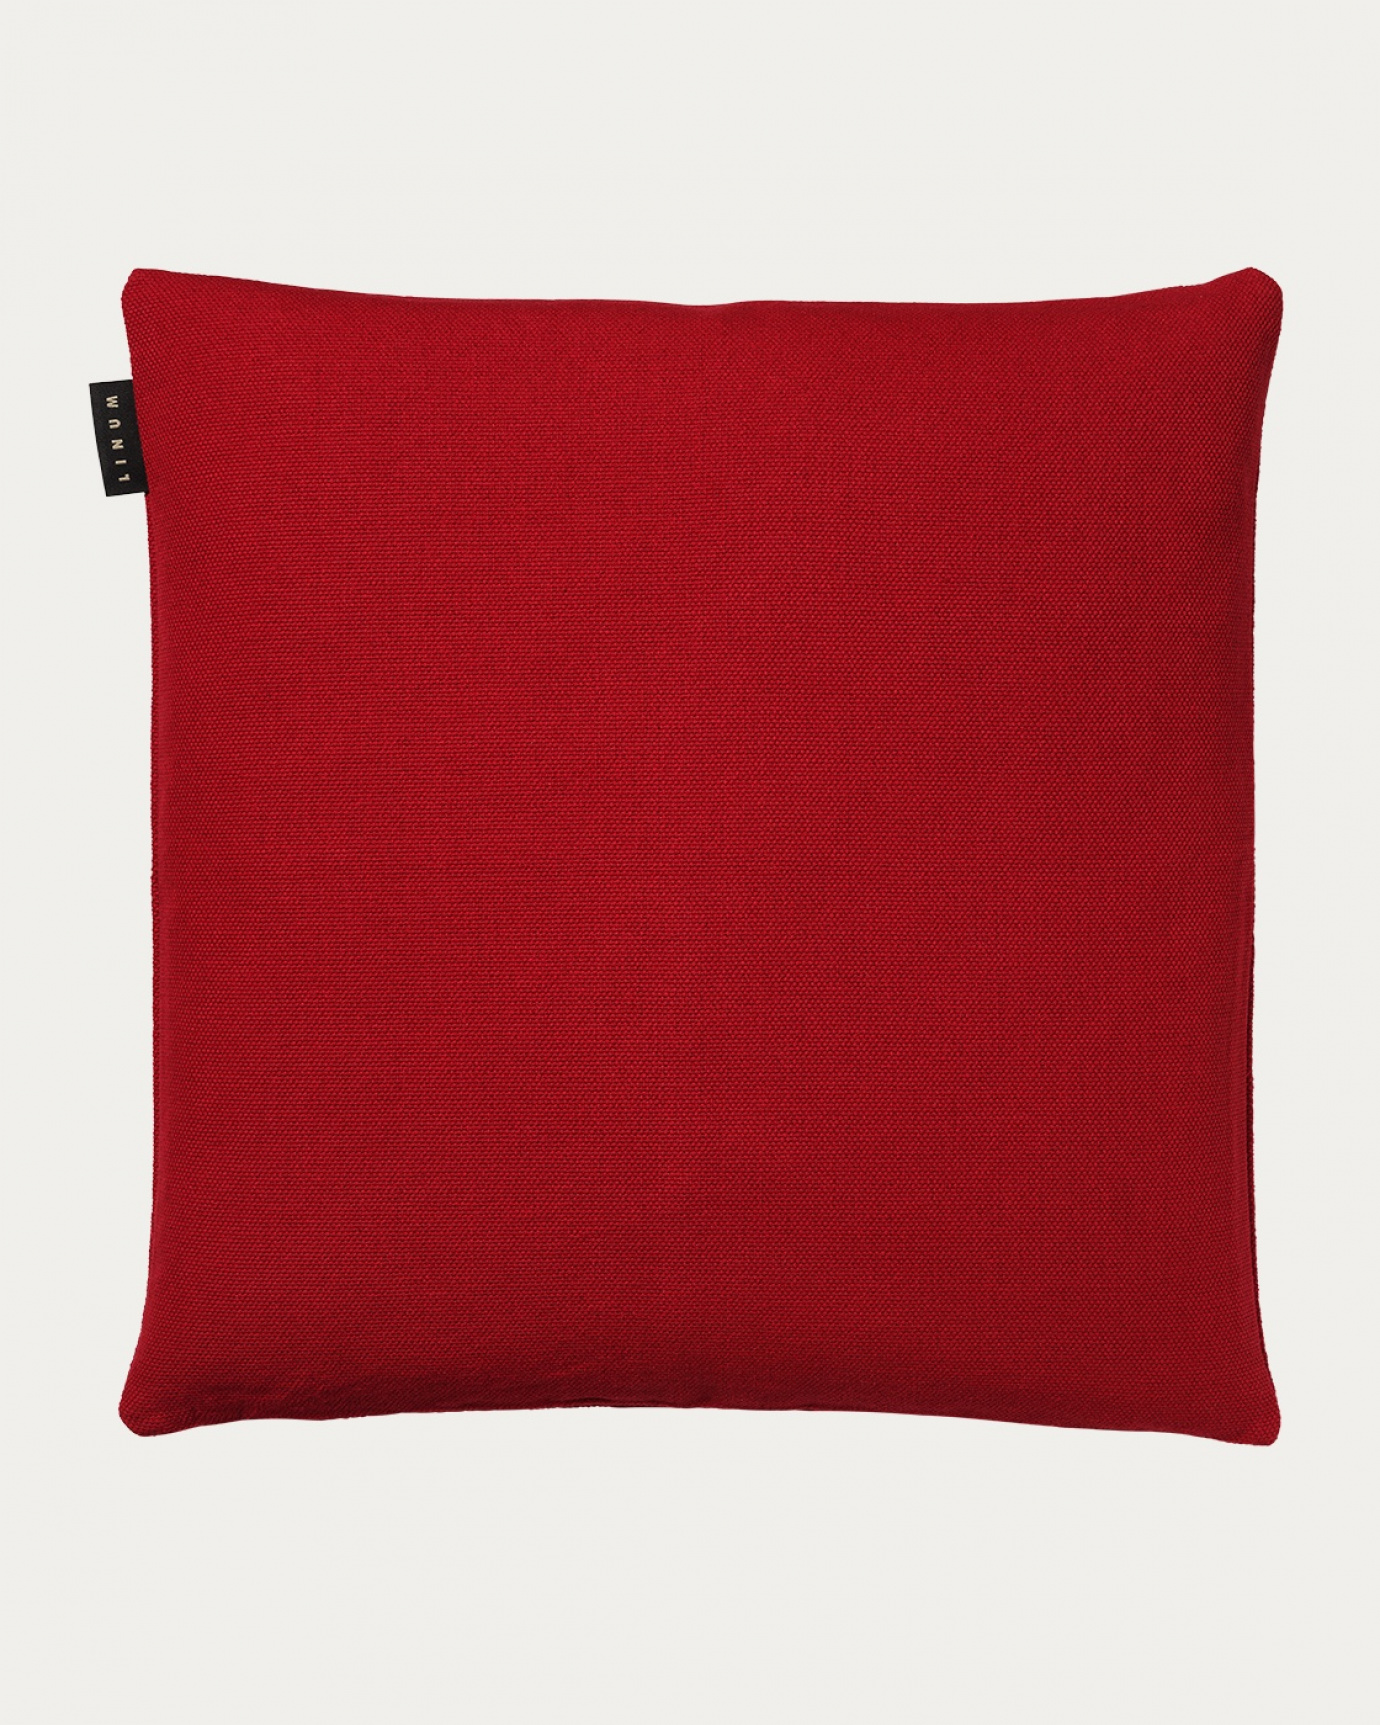 Produktbild röd PEPPER kuddfodral av mjuk bomull från LINUM DESIGN. Lätt att tvätta och hållbar genom generationer. Storlek 60x60 cm.